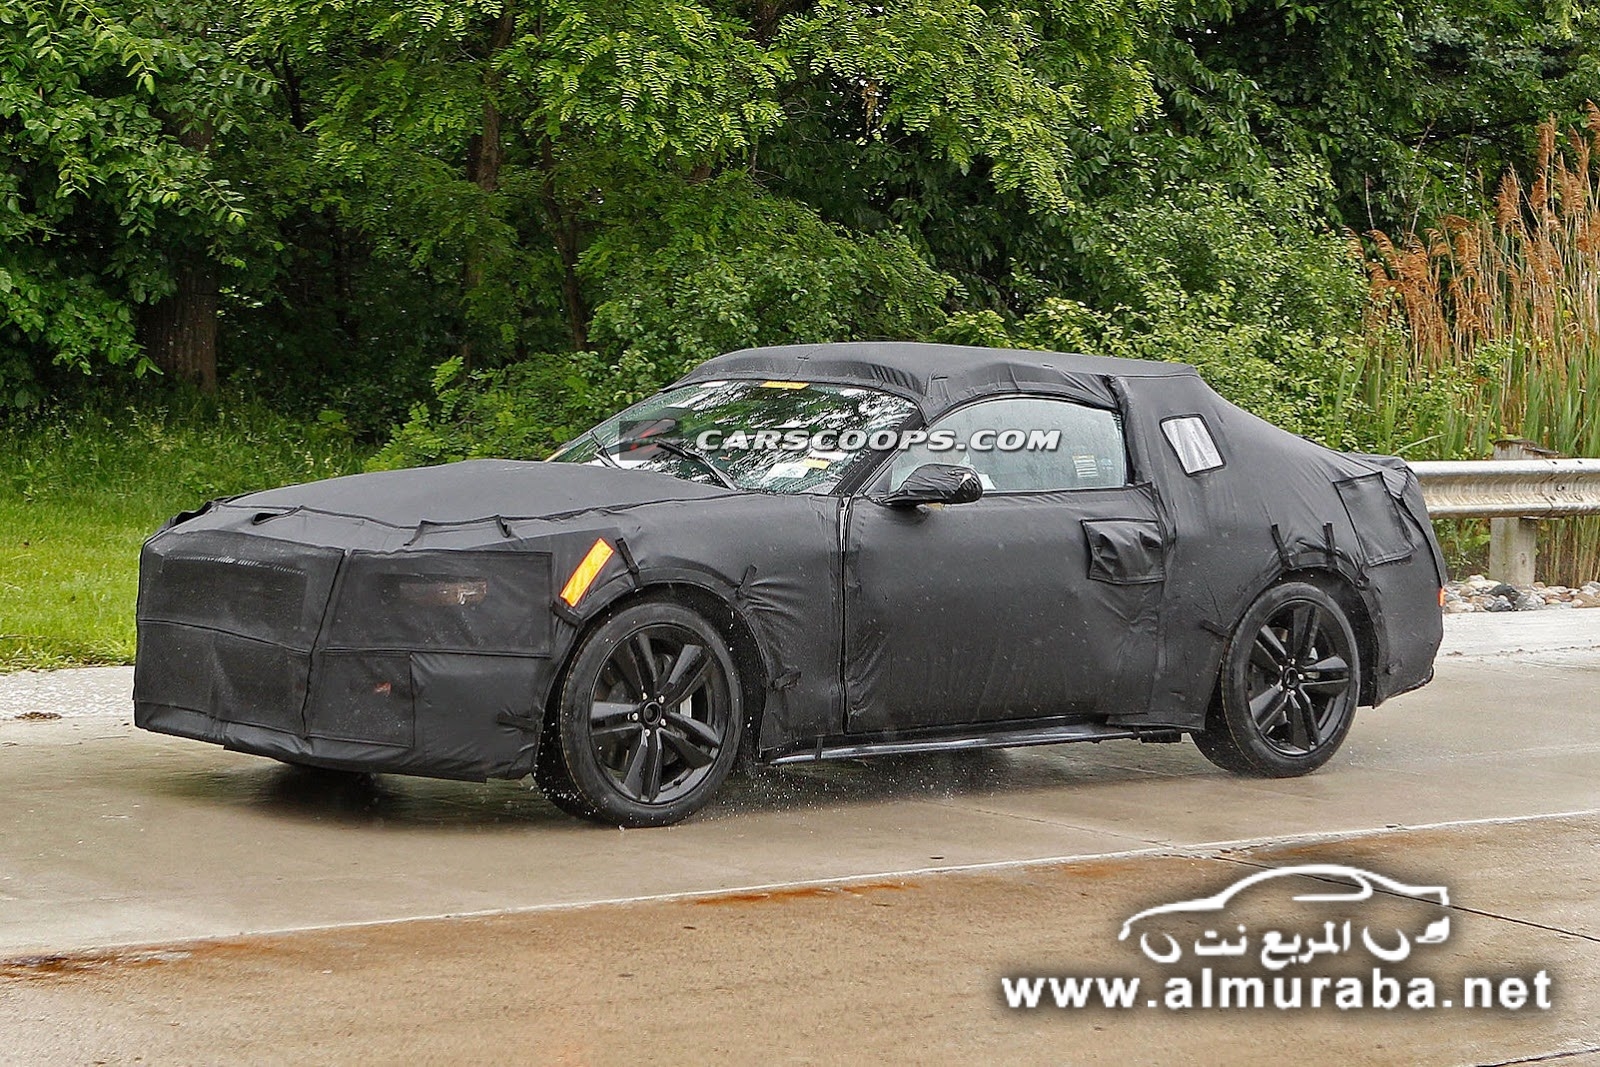 التقاط اول صور لسيارة فورد موستنج 2015 الجديدة كلياً خلال اختبارها Mustang 2015 18